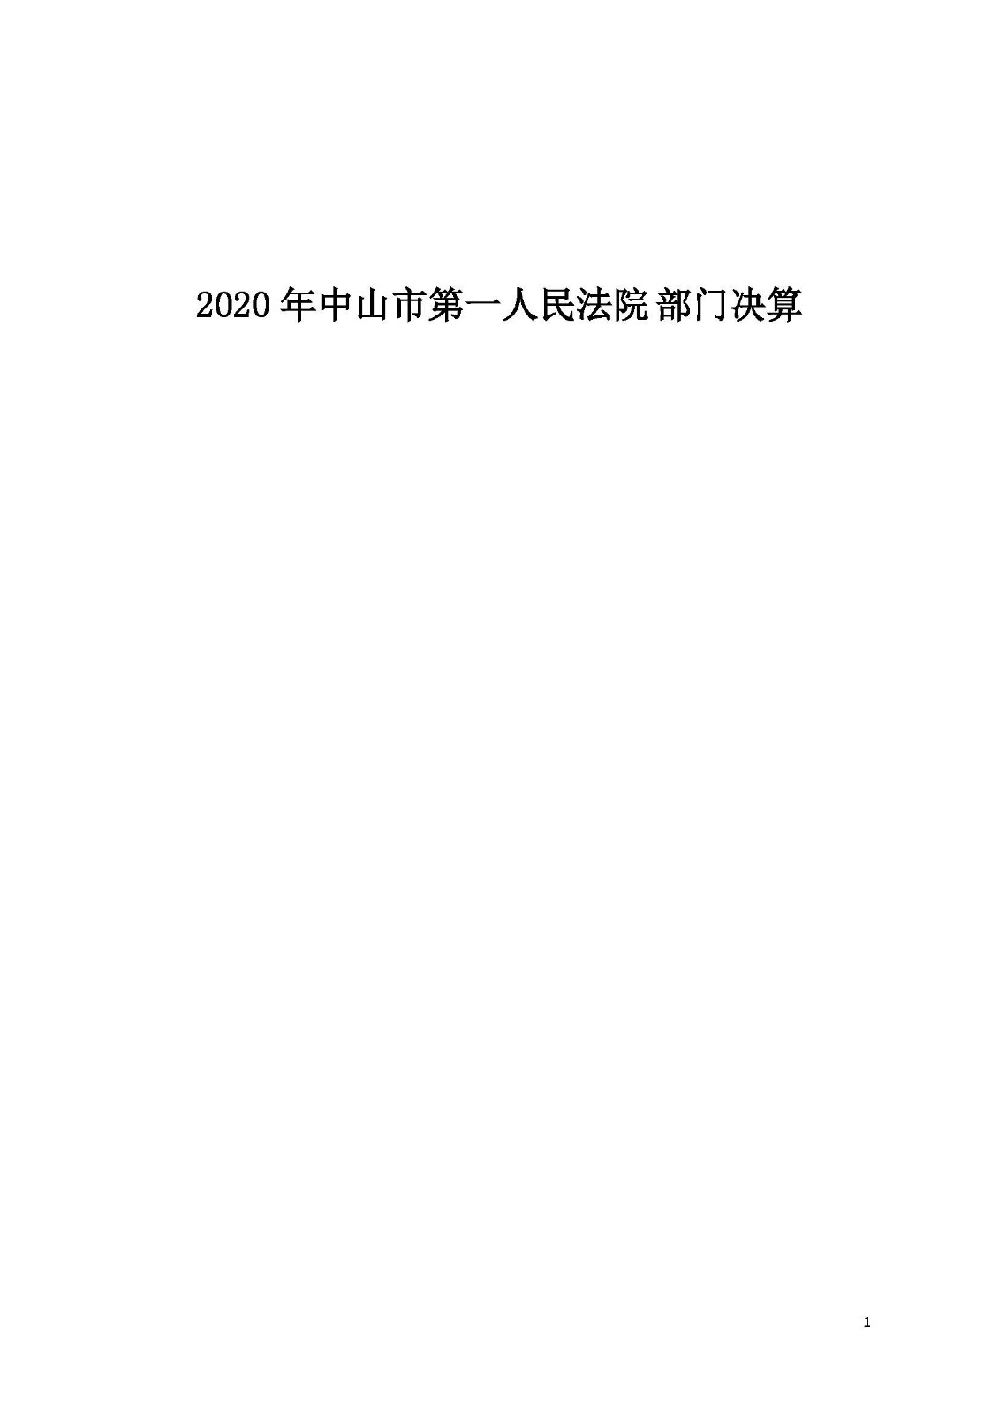 2020年中山市第一人民法院部门决算_页面_01.jpg